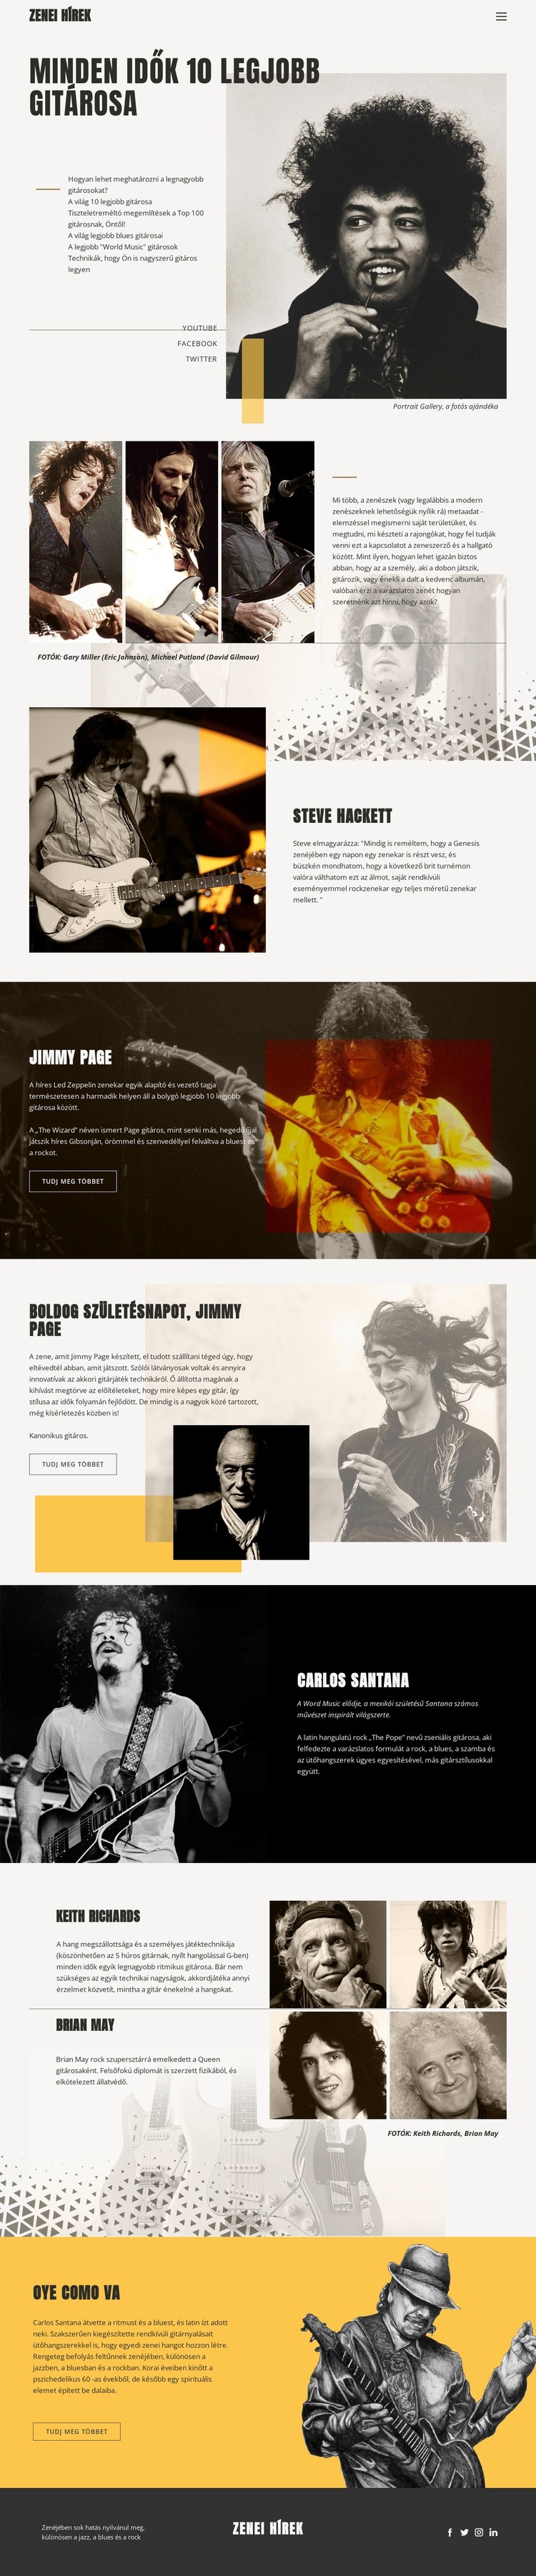 A legjobb gitárosok Weboldal tervezés